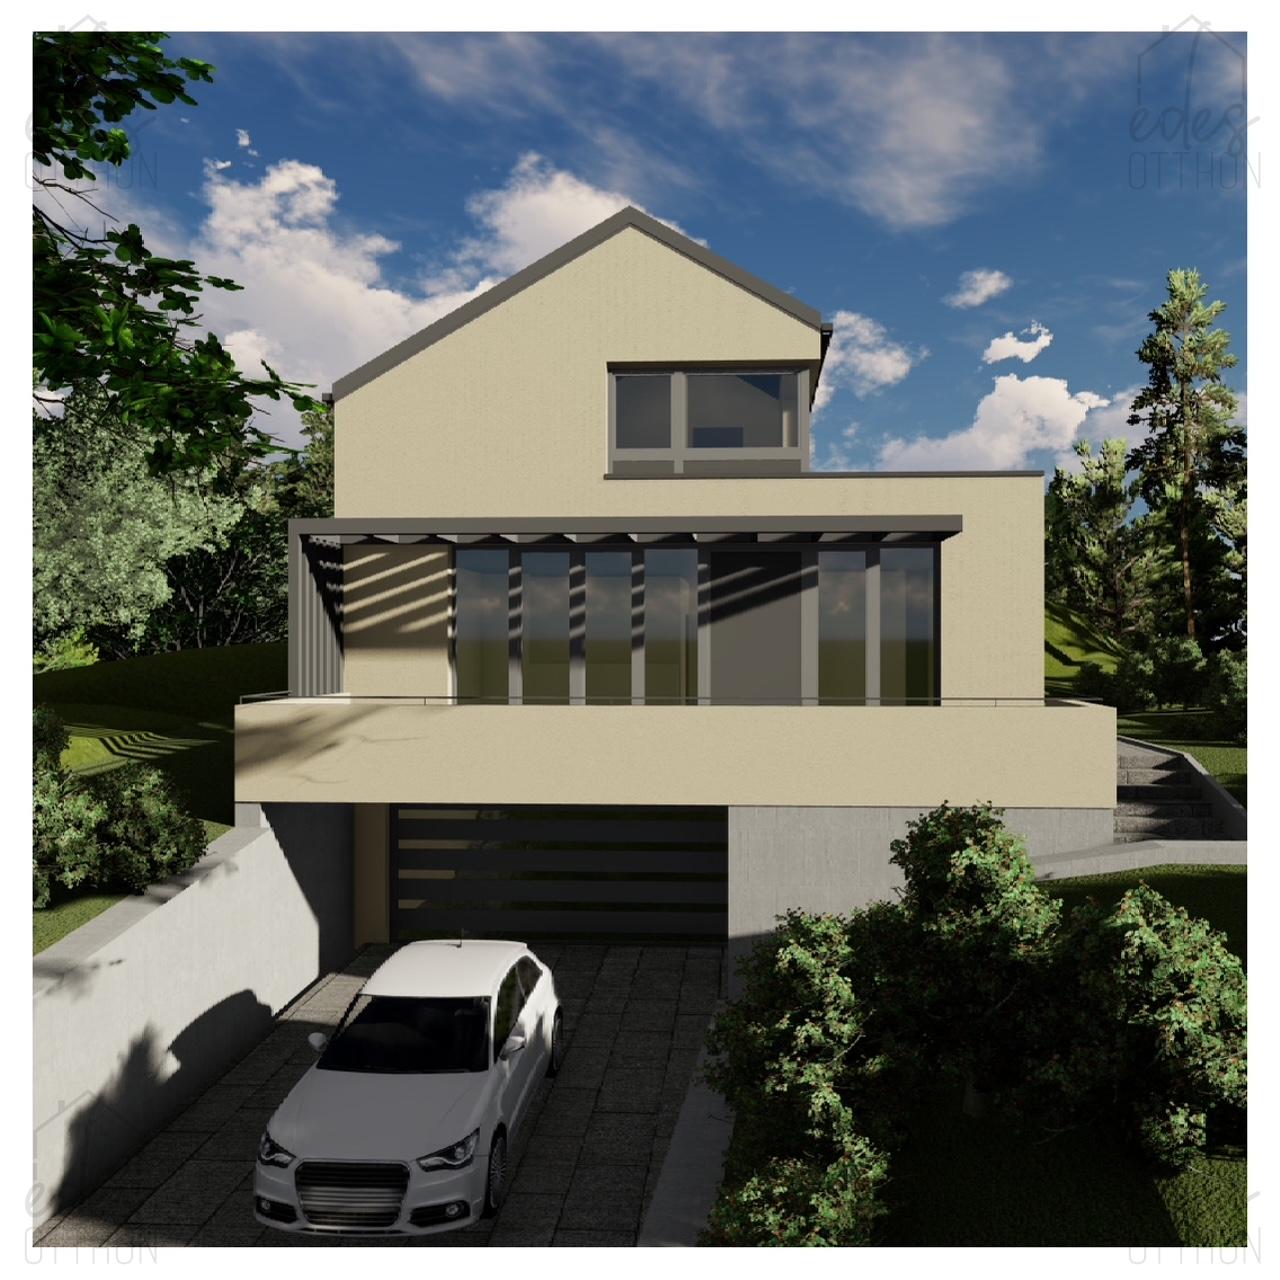 Eladó exkluzív, letisztult, luxus minőségben és korszerű technikával épülő alacsony energetikájú családi ház Nagykovácsiban - kép 12843